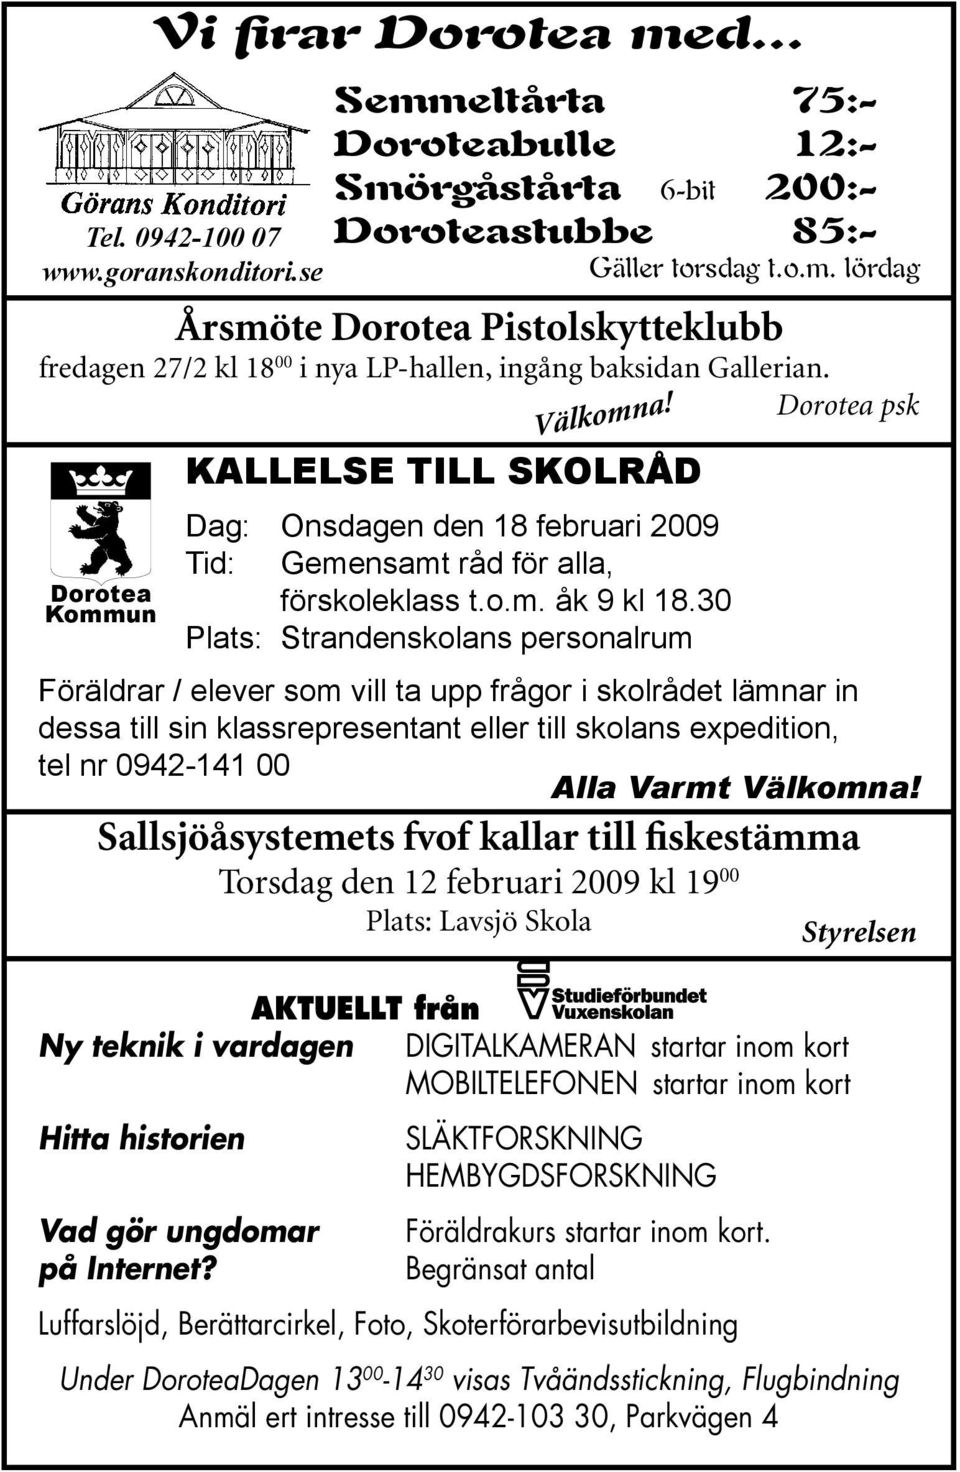 Dorotea psk Dorotea Kommun Kallelse till skolråd Dag: Onsdagen den 18 februari 2009 Tid: Gemensamt råd för alla, förskoleklass t.o.m. åk 9 kl 18.